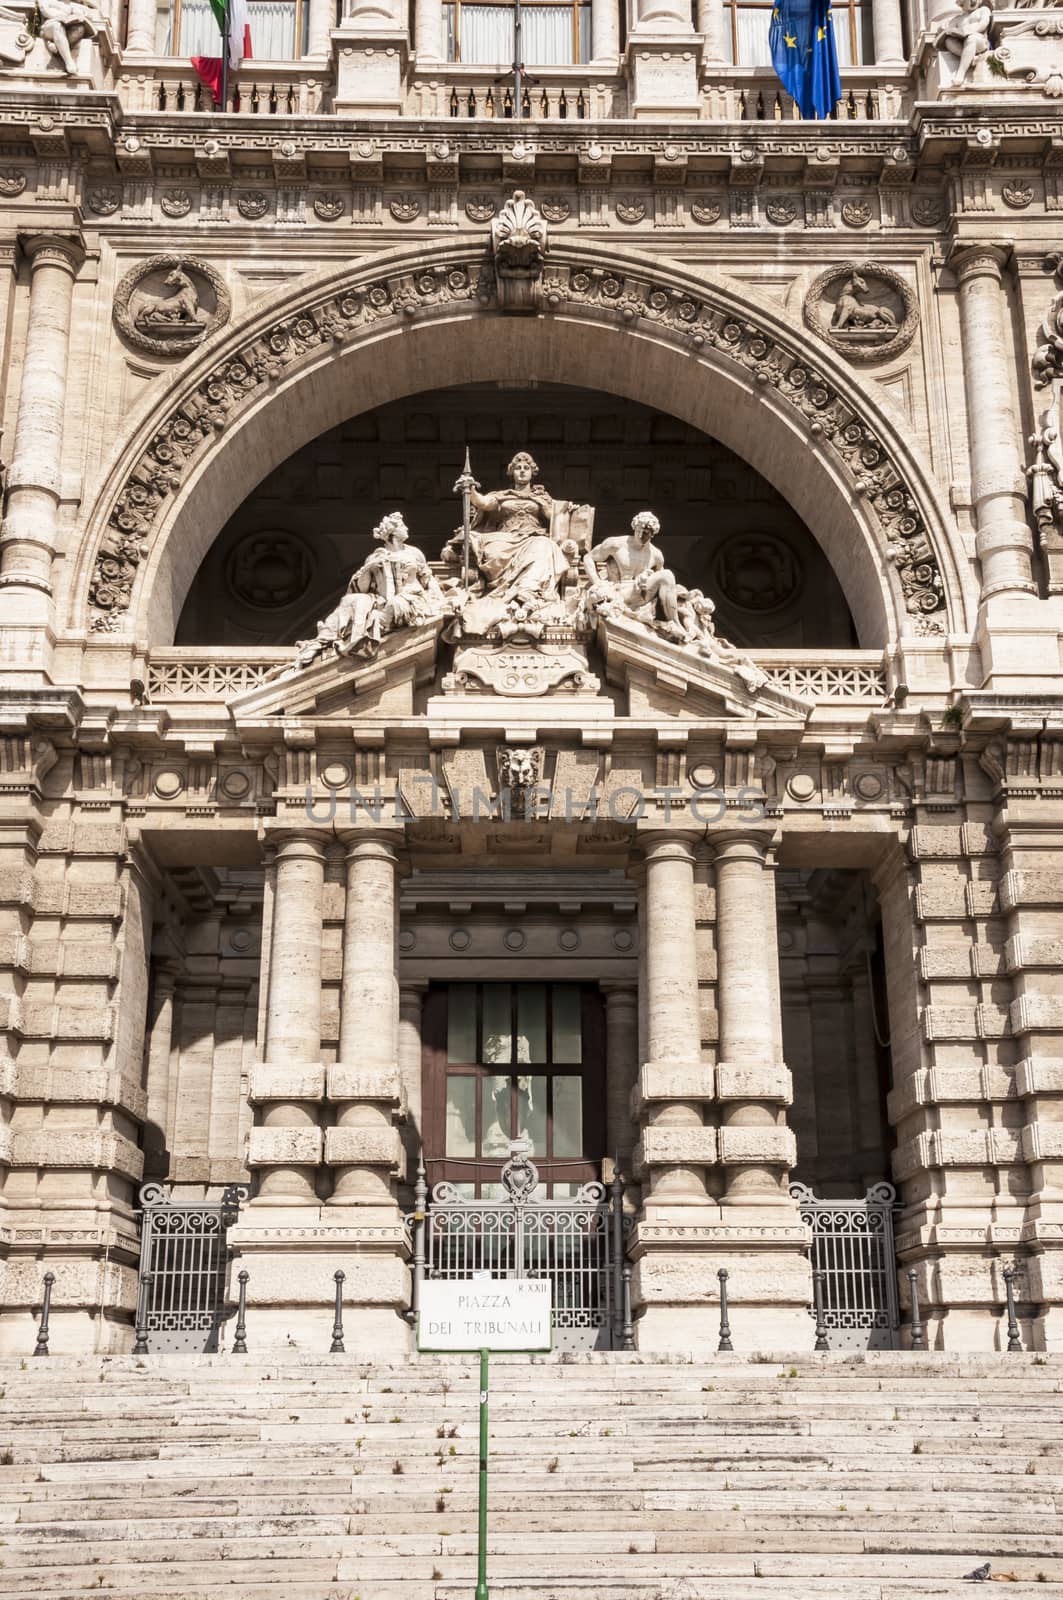 Architectural fragments of Palace of Justice Corte Suprema di Cassazione . Design by Perugia architect Guglielmo Calderini, built between 1888 and 1910. Rome, Italy.